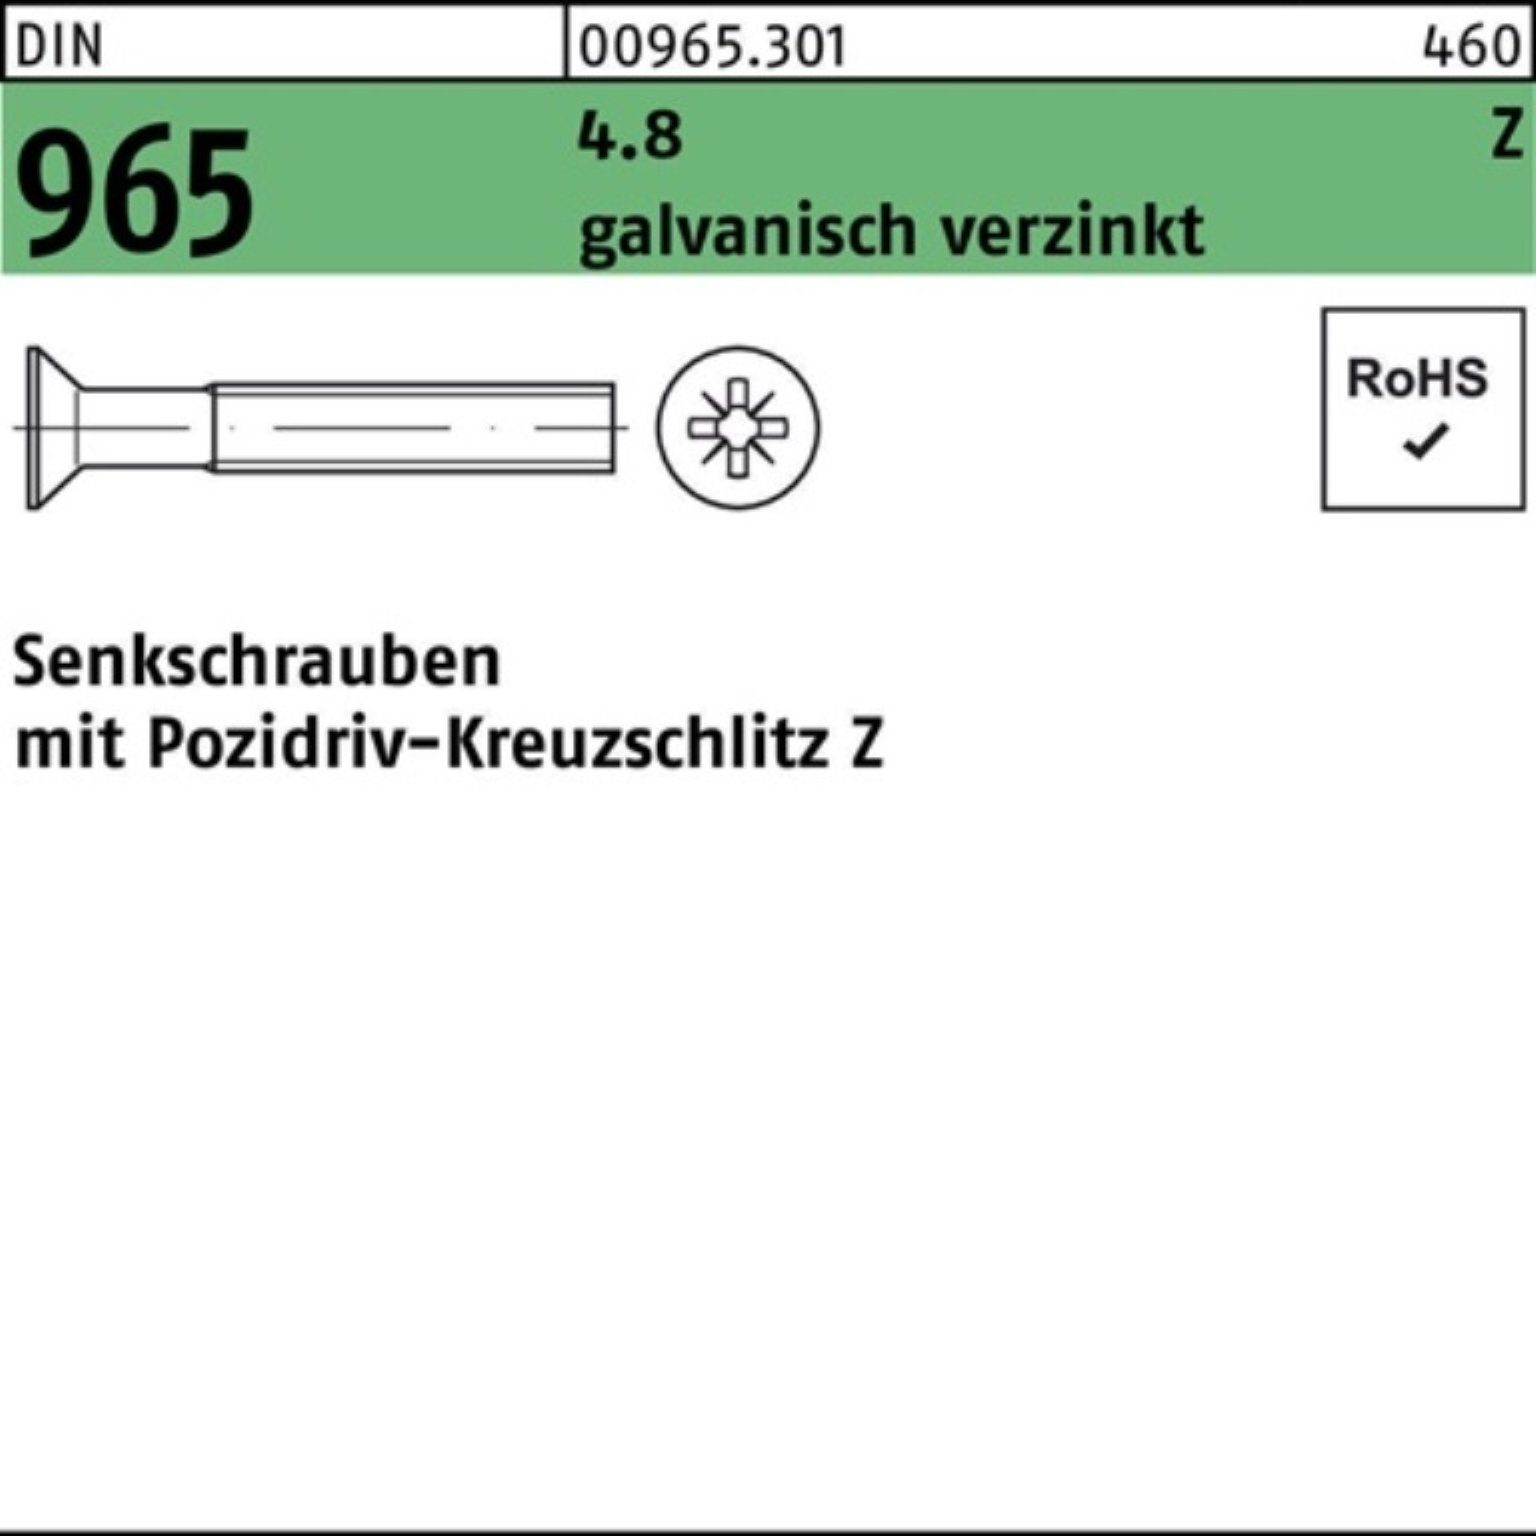 grenzenlos Reyher Senkschraube 1000er Pack Senkschraube DI 965 galv.verz. DIN 1000St. 4.8 30-Z PZ M4x